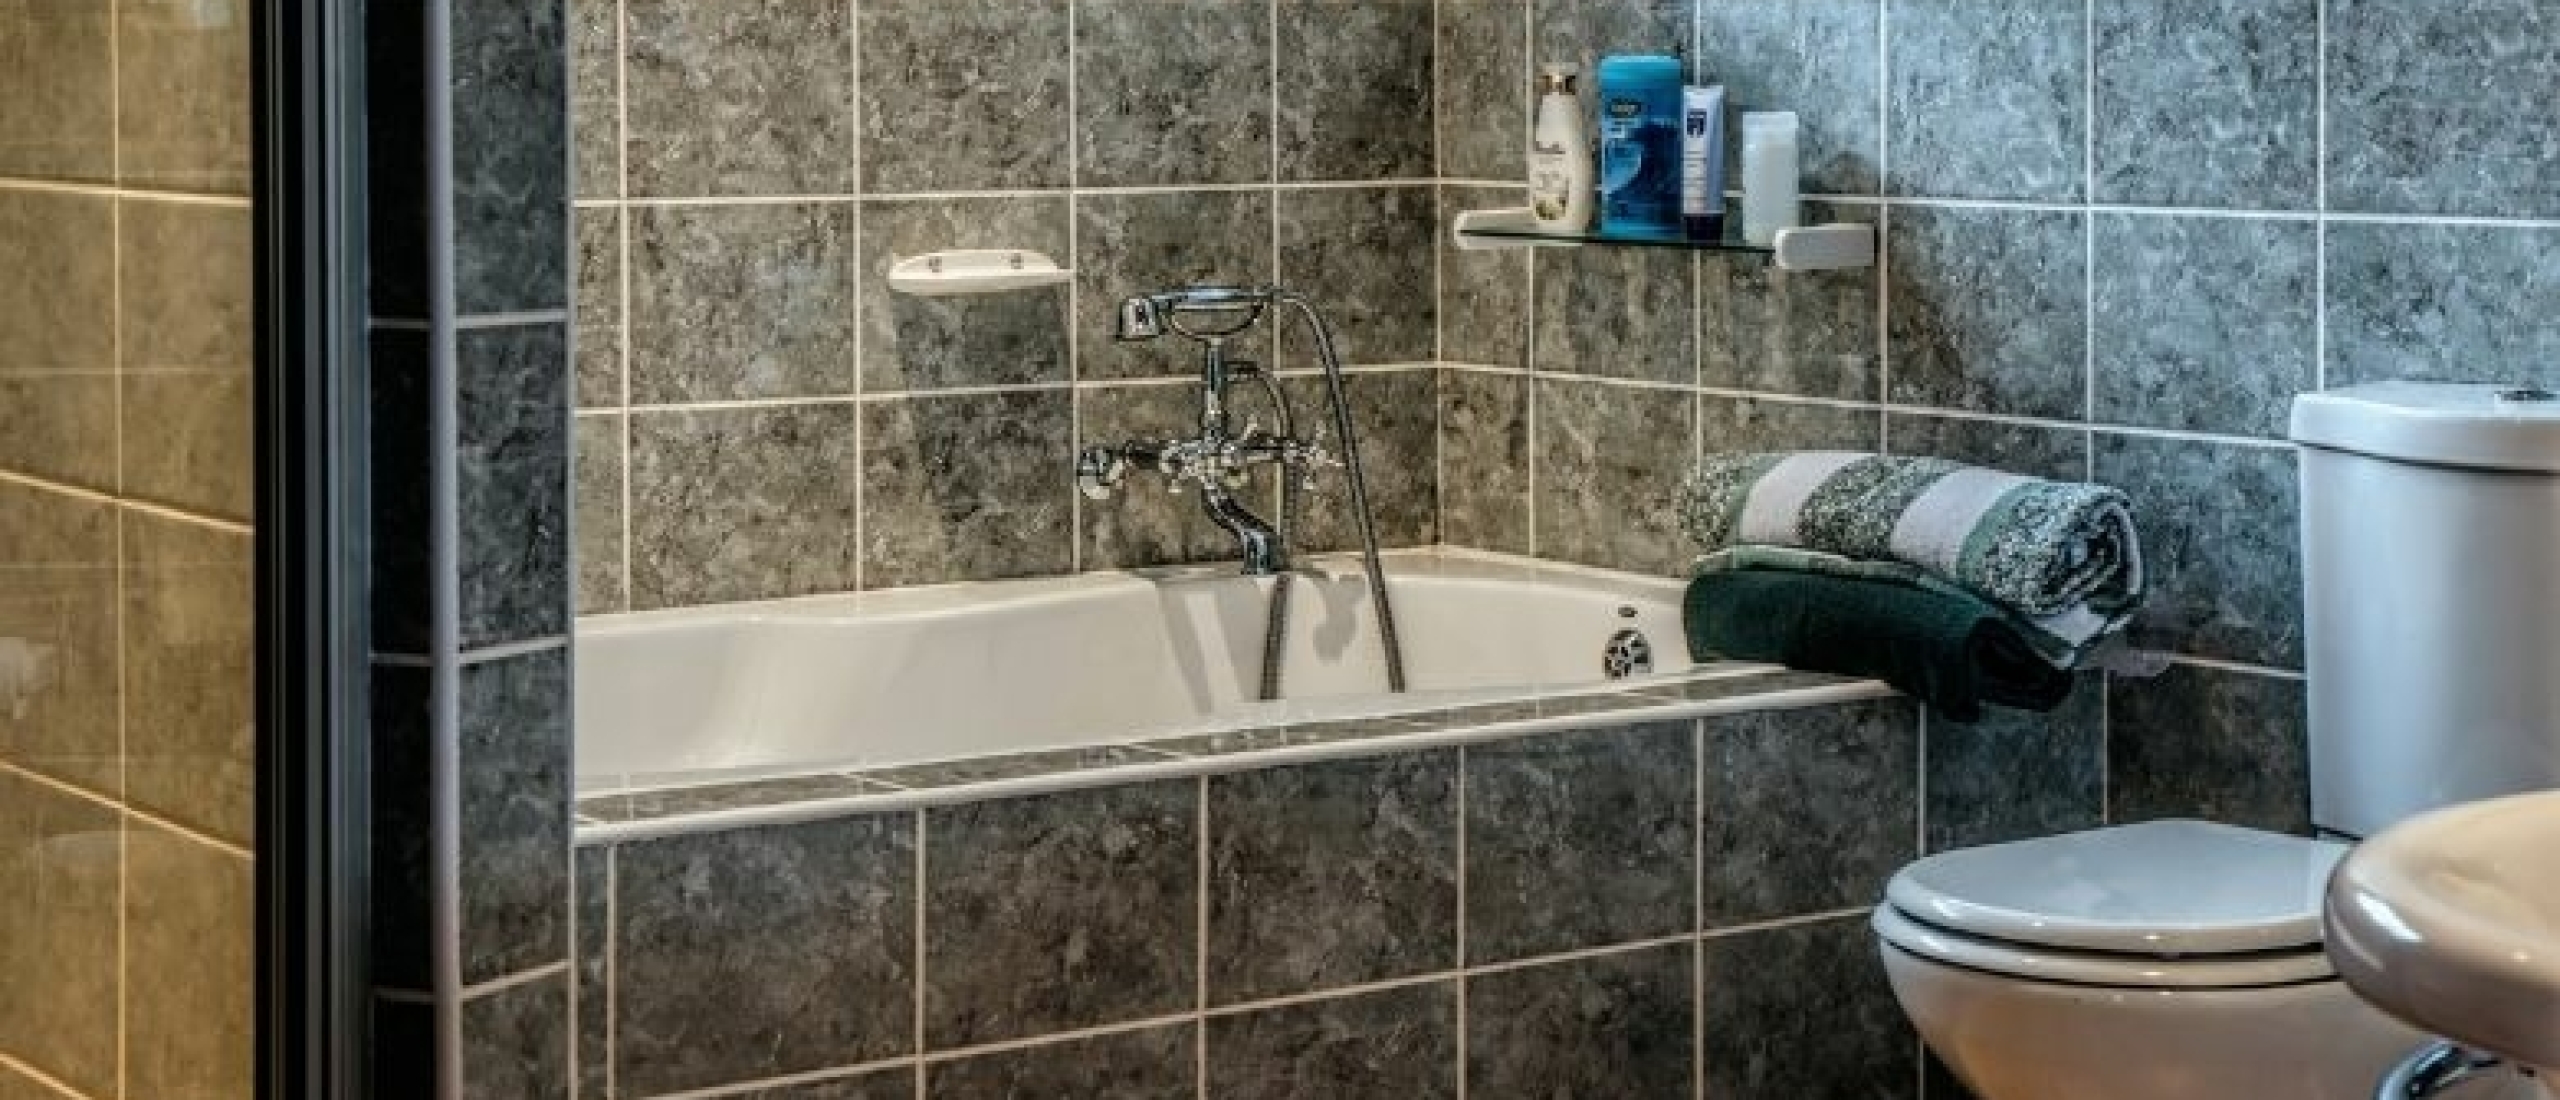 schoonmaakbedrijf-amersfoort-de-schoonmaak-badkamer